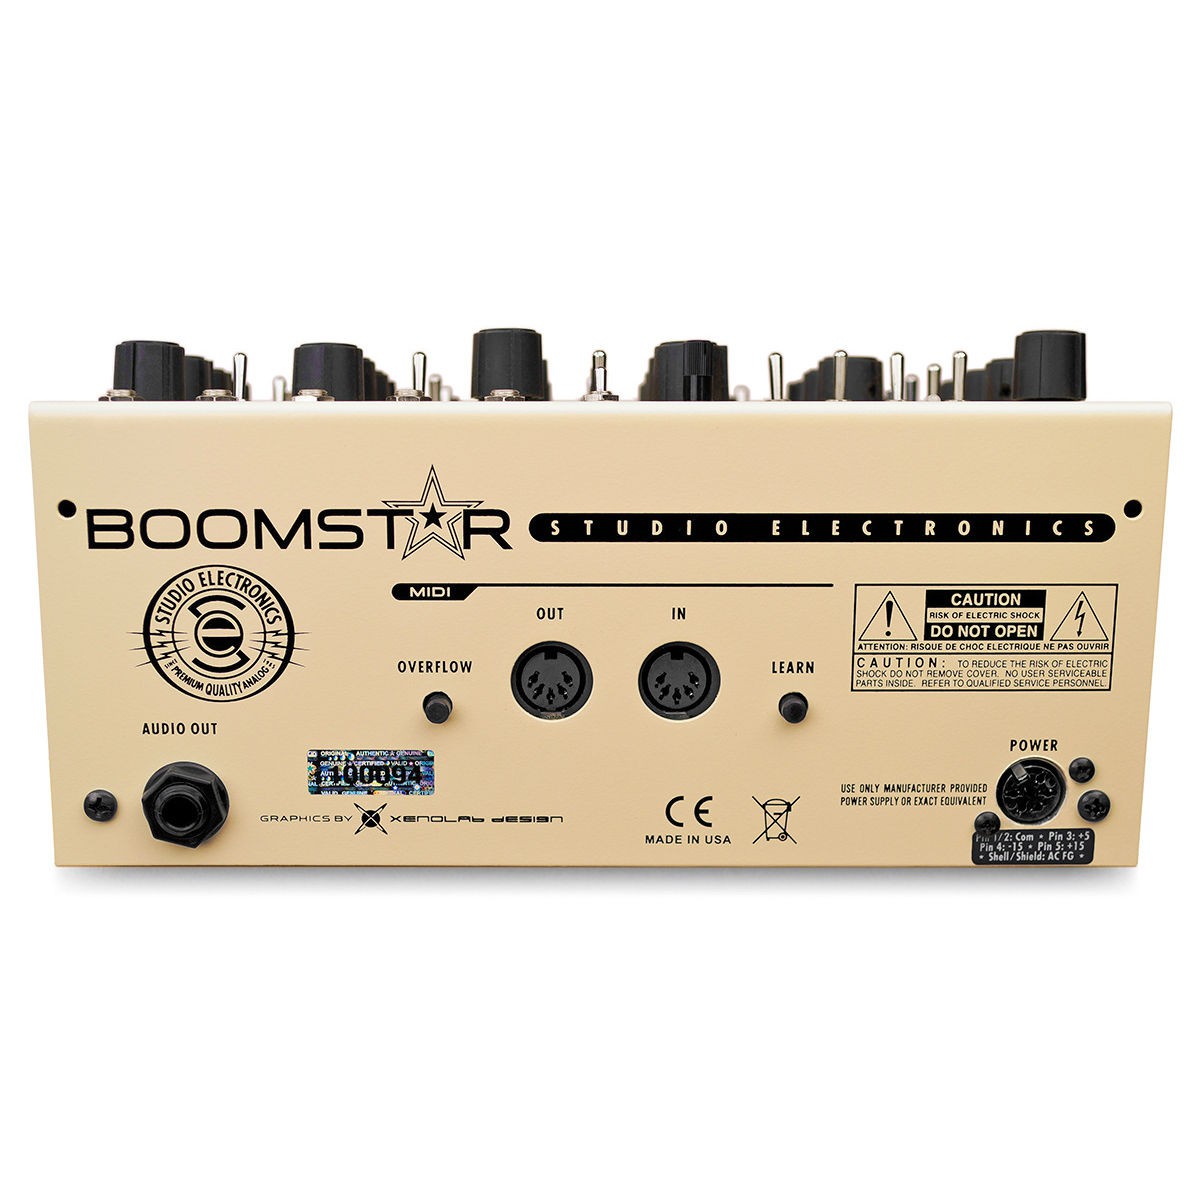 Studio Electronics Boomstar SEM Настольные аналоговые синтезаторы